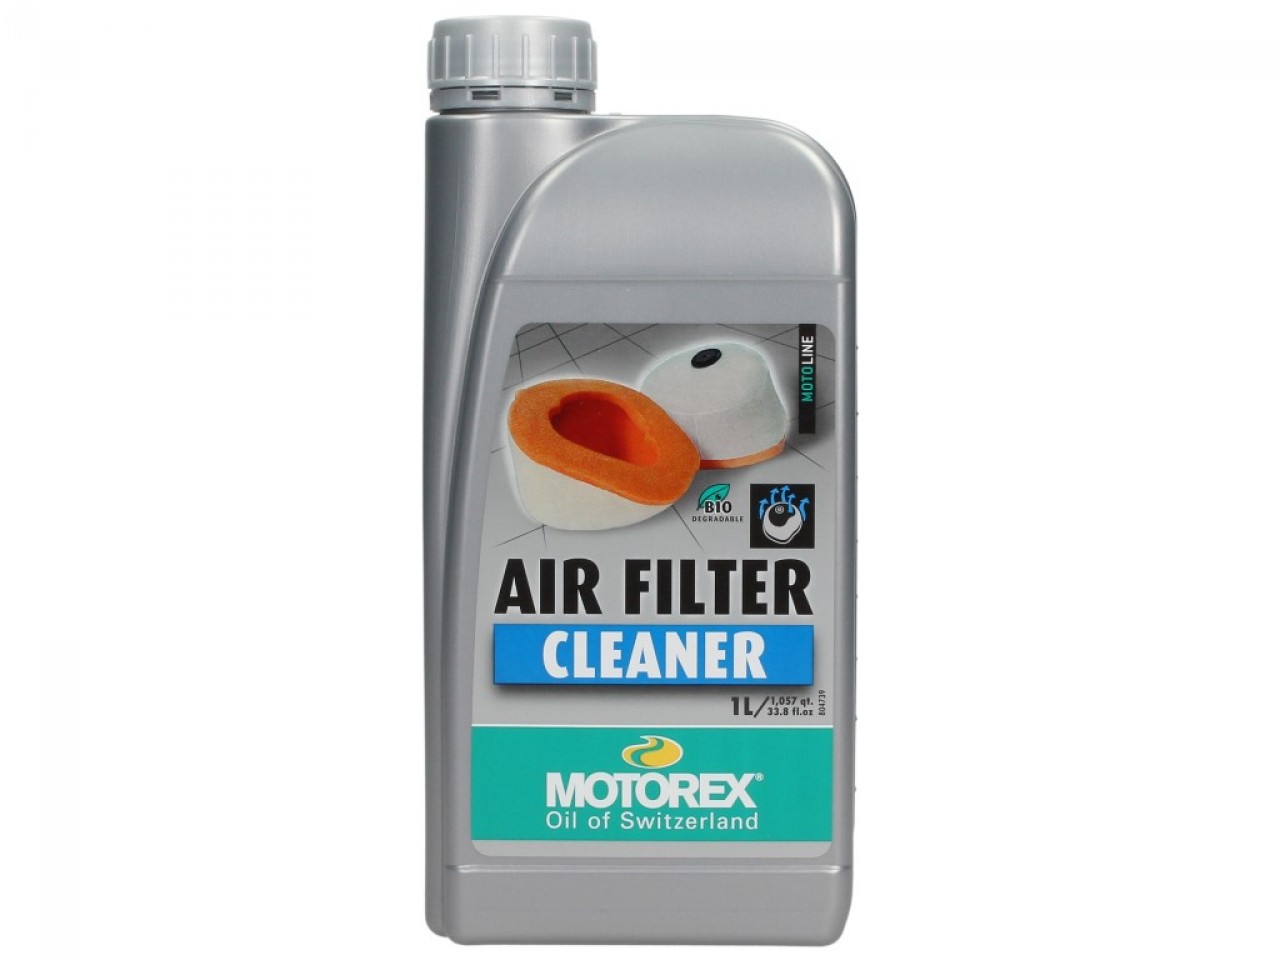 Motorex Luftfilterreiniger Air Filter Cleaner 1l